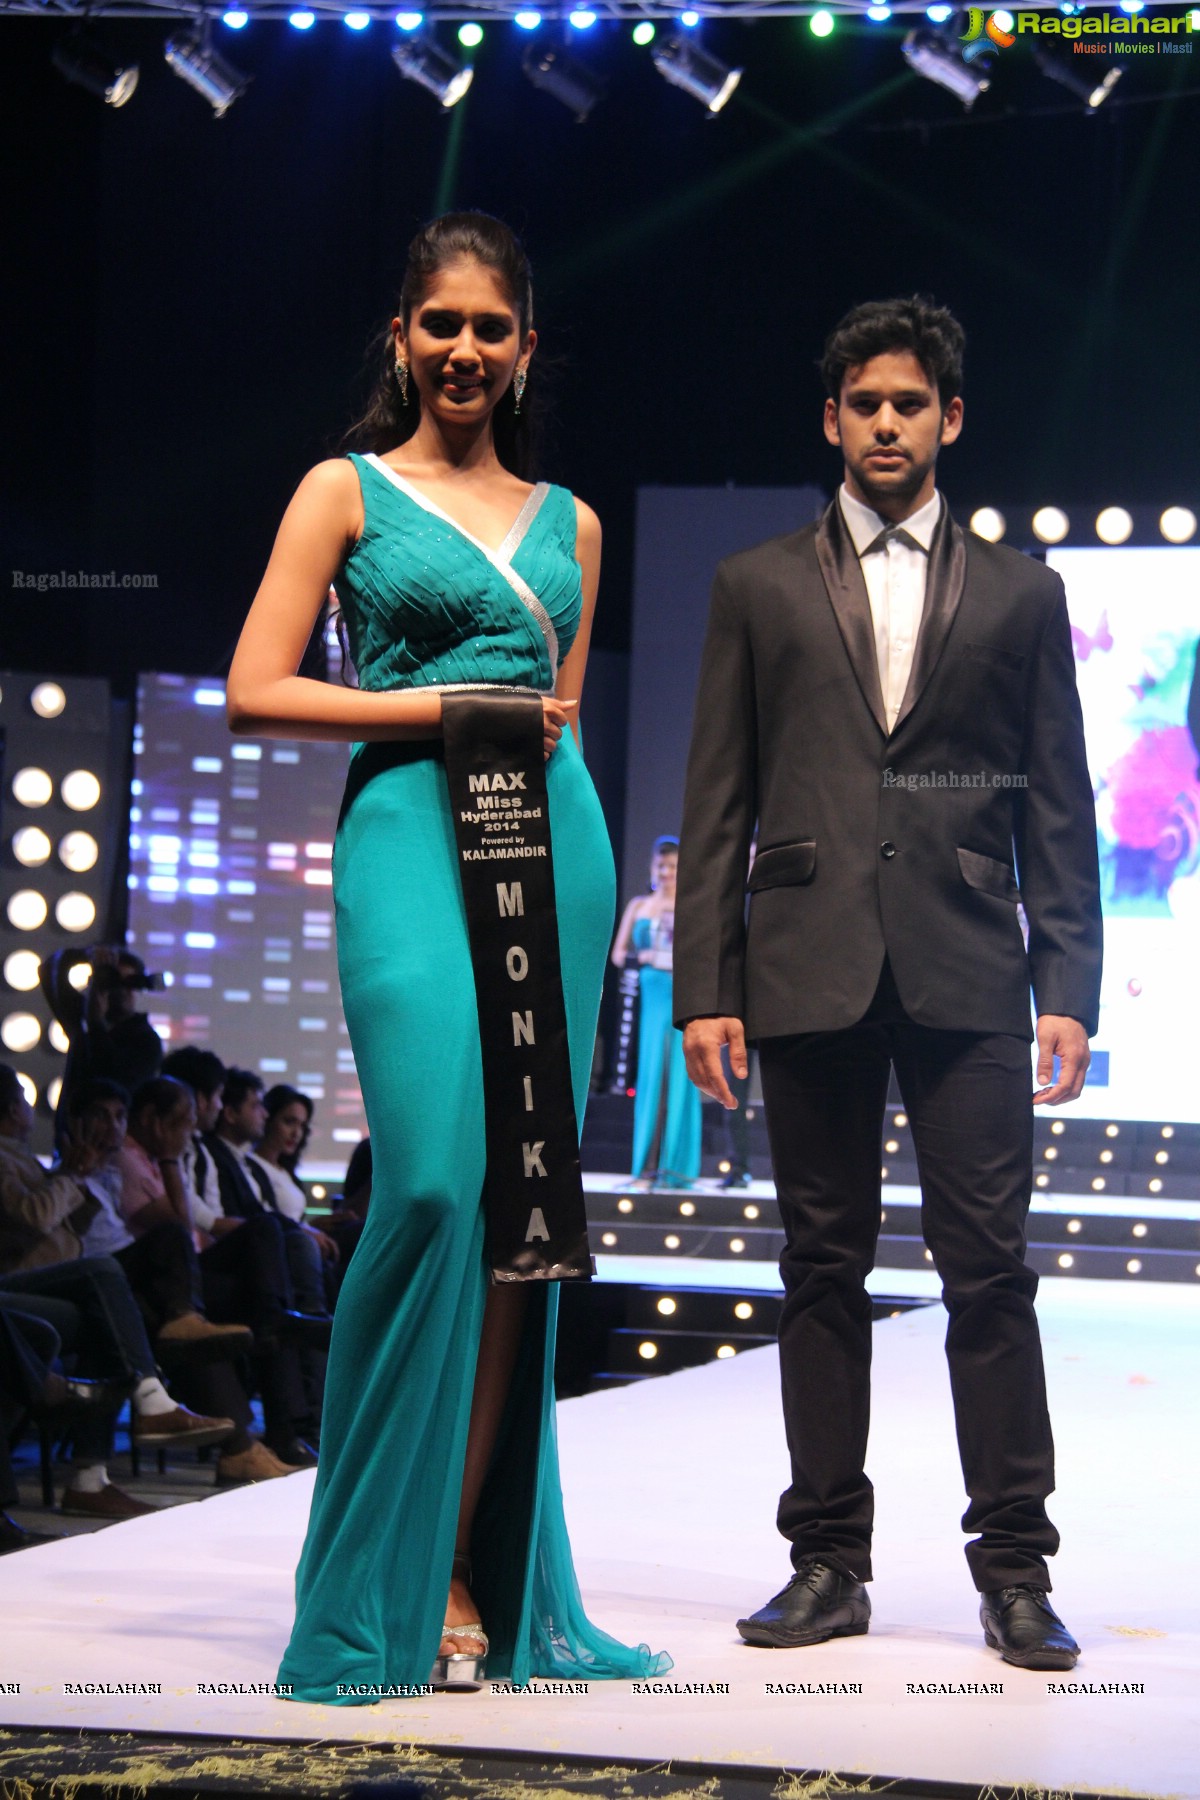 Max Miss Hyderabad 2014 Finals